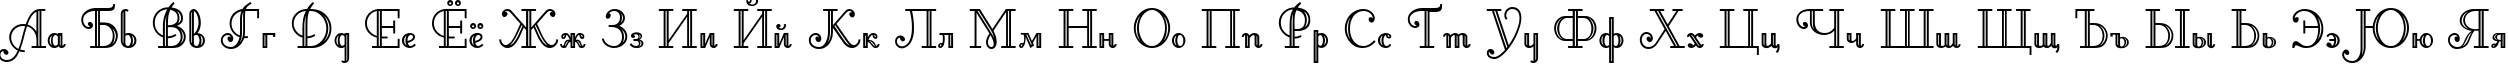 Пример написания русского алфавита шрифтом Artemis Deco